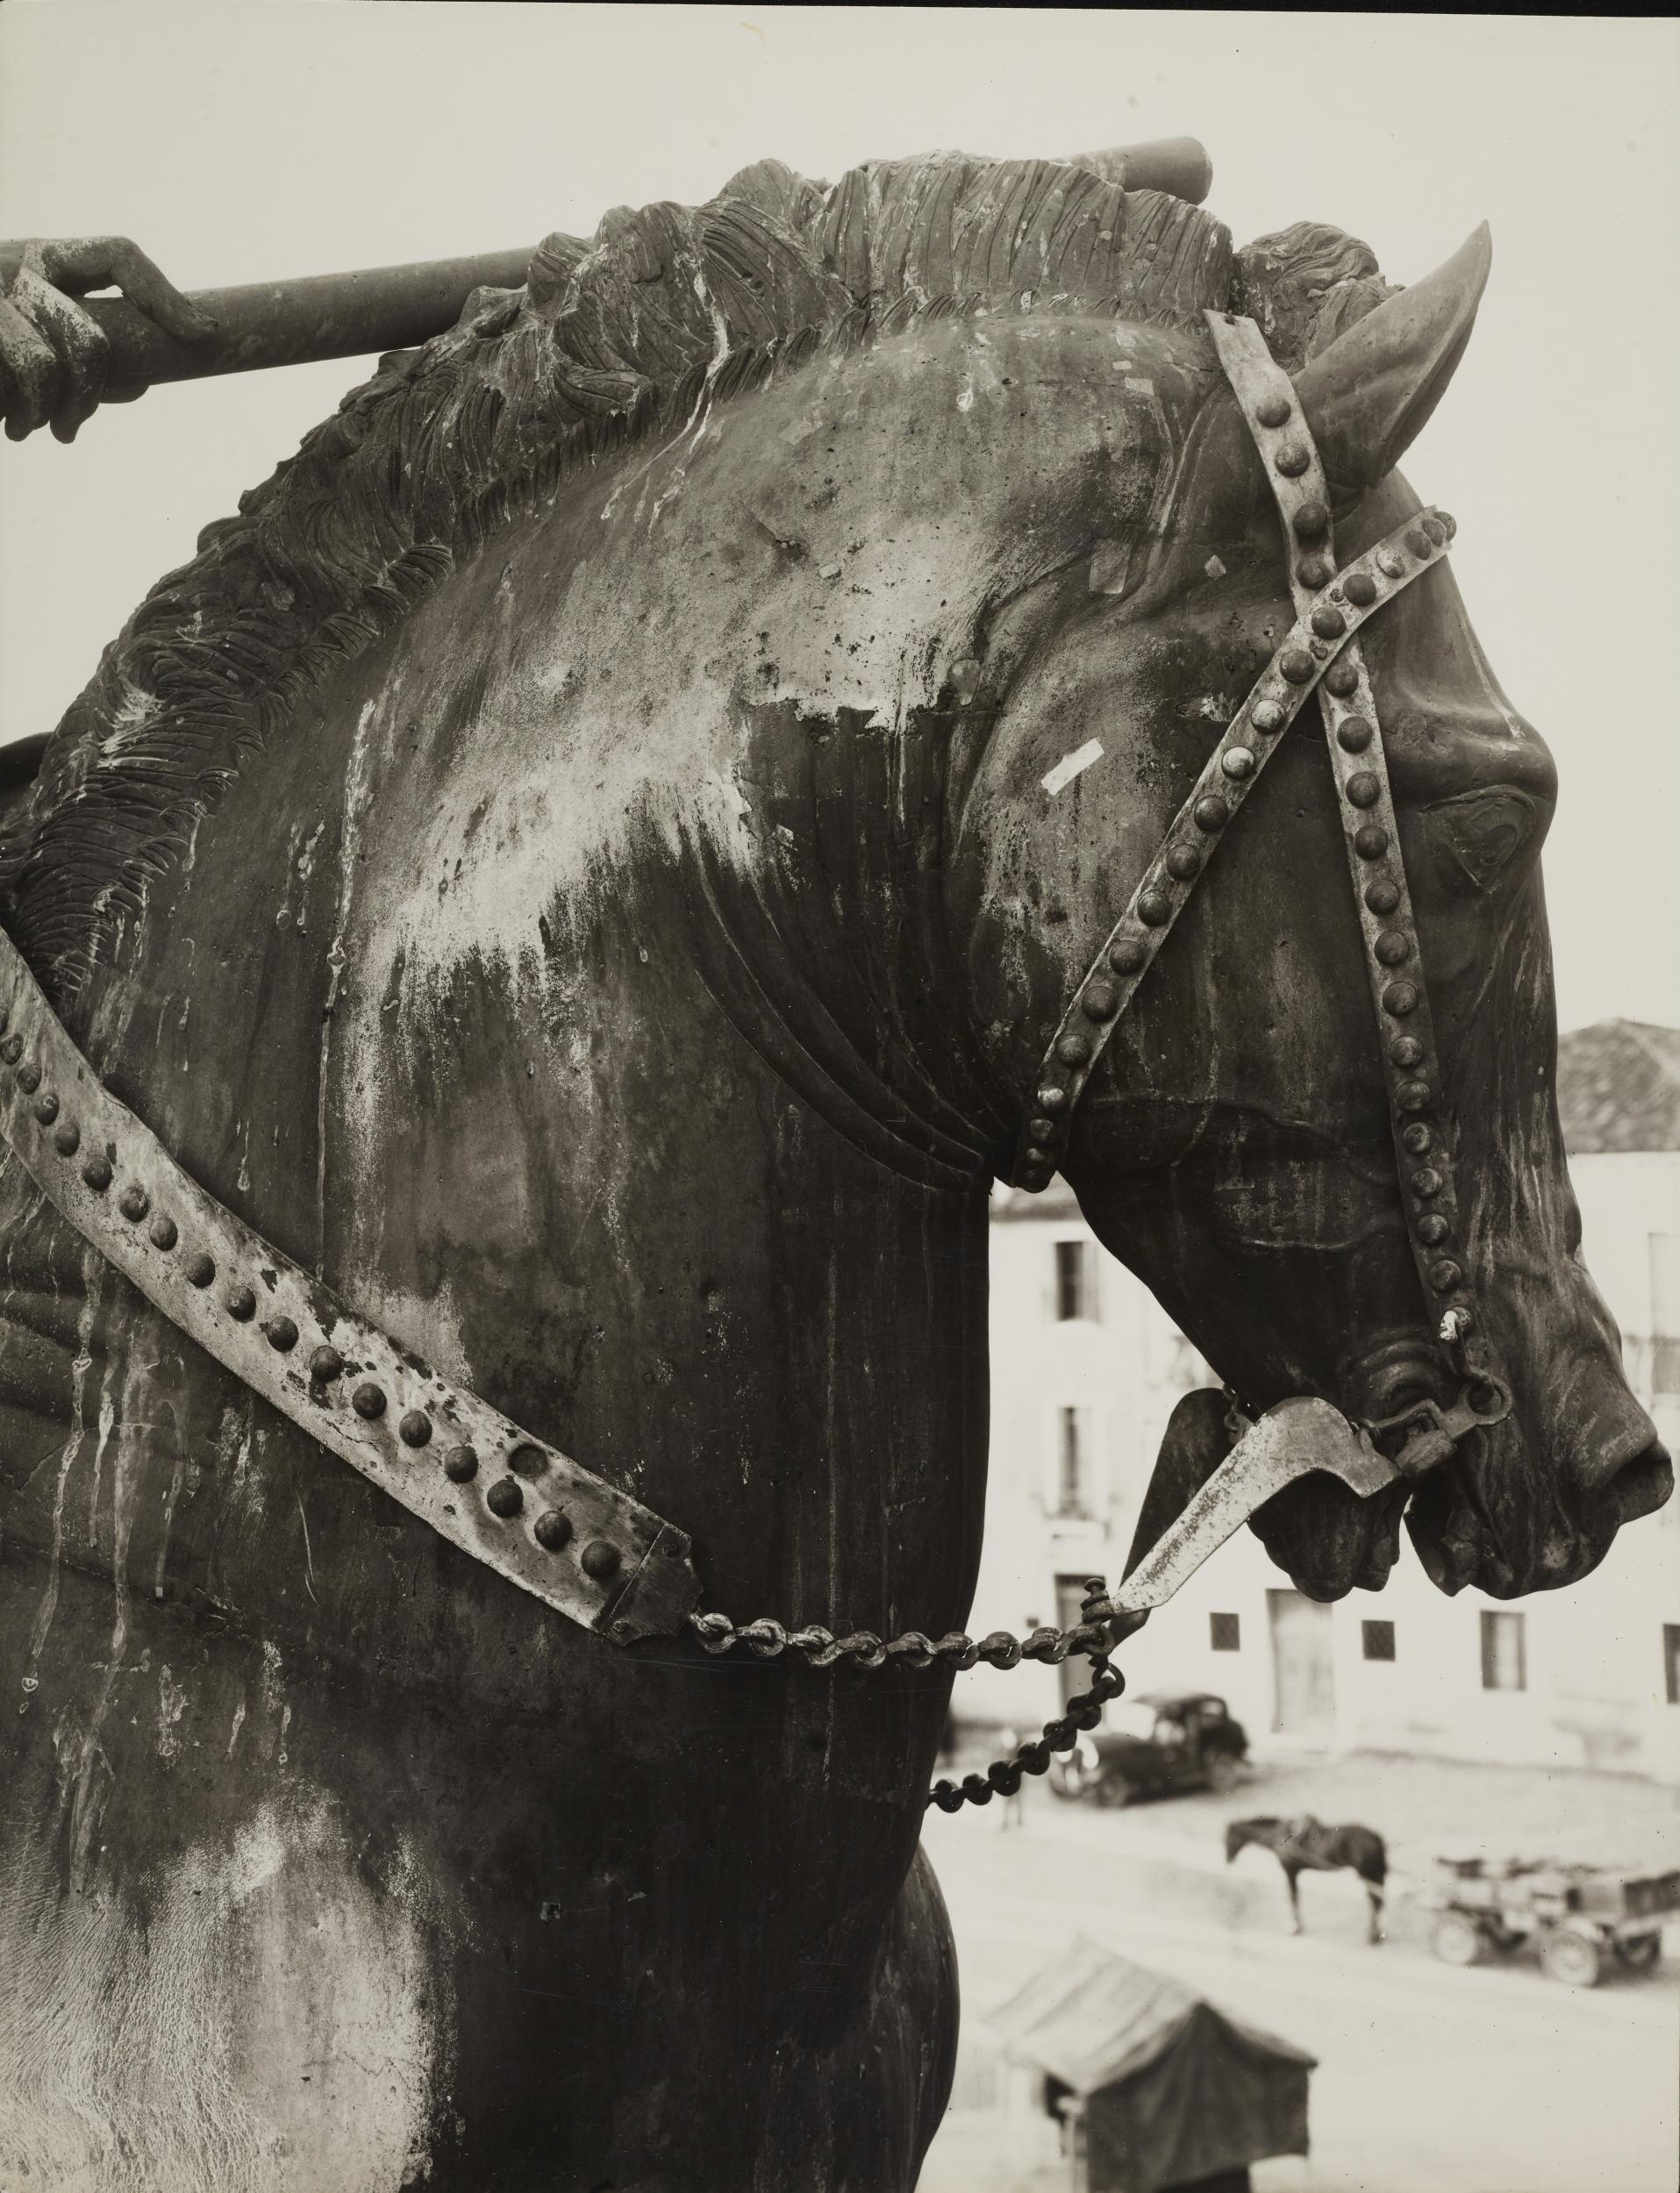 Gino Malenotti, Padova - Monumento equestre al Gattamelata, testa del cavallo, profilo destro, gelatina ai sali d'argento, MPI6073262